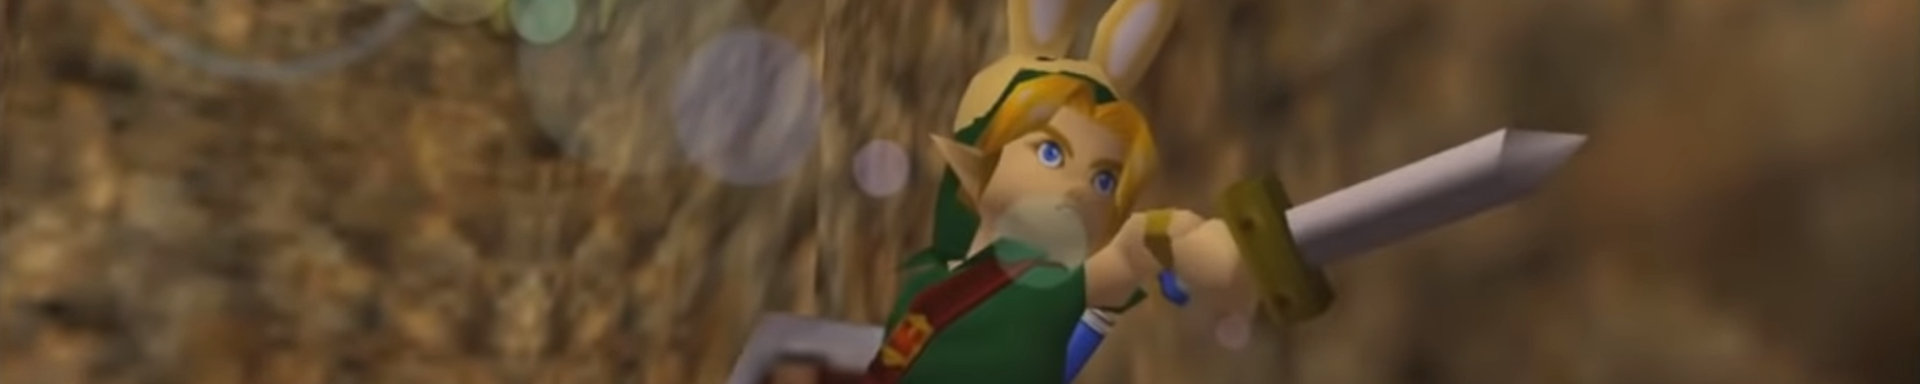 The Legend of Zelda: The Missing Link slice